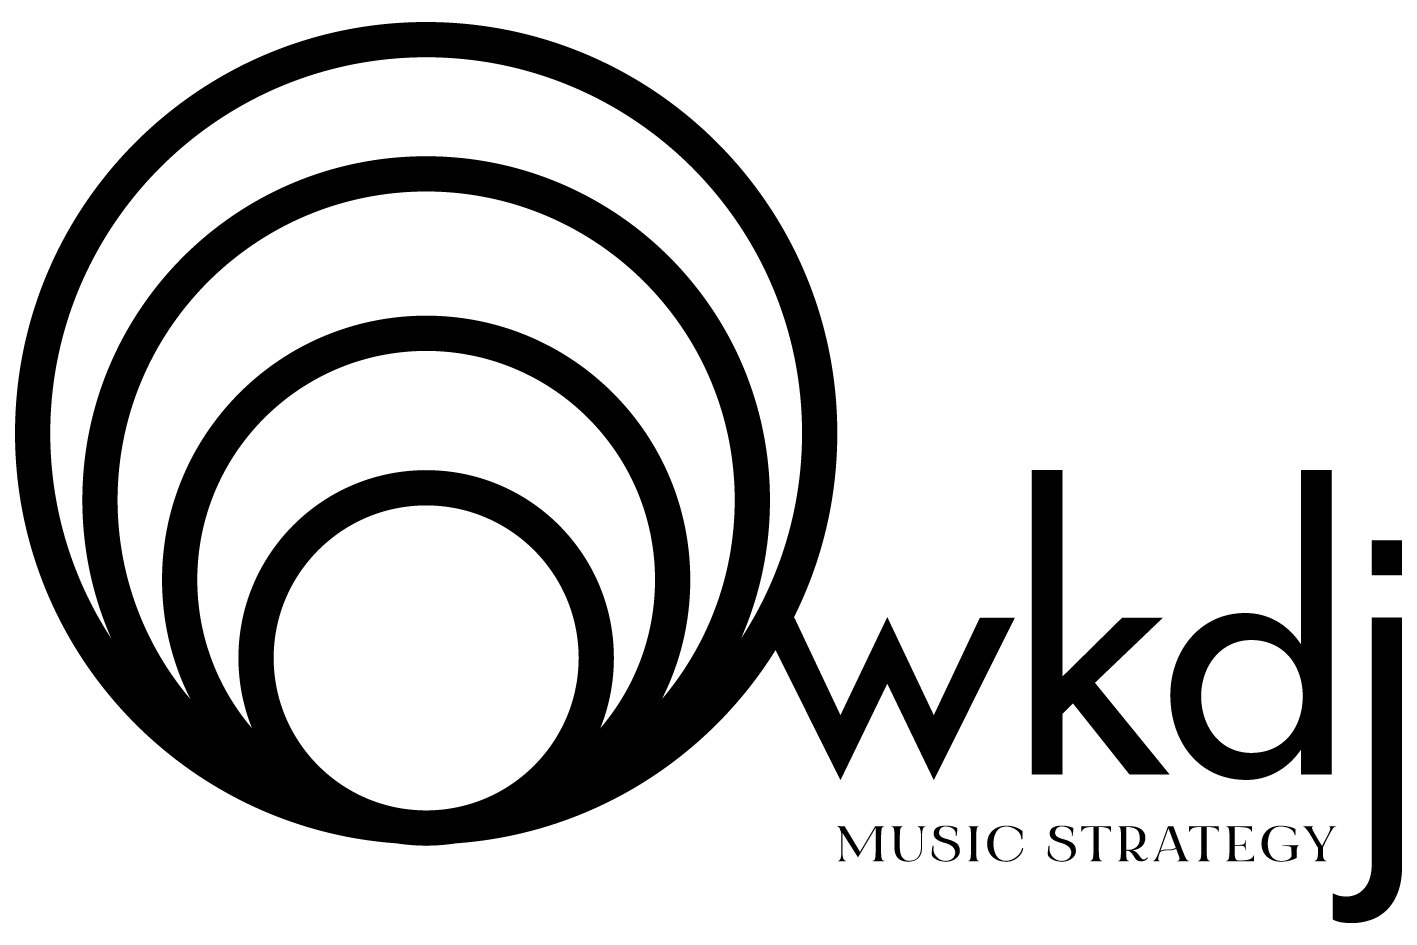 WKDJ music strategy